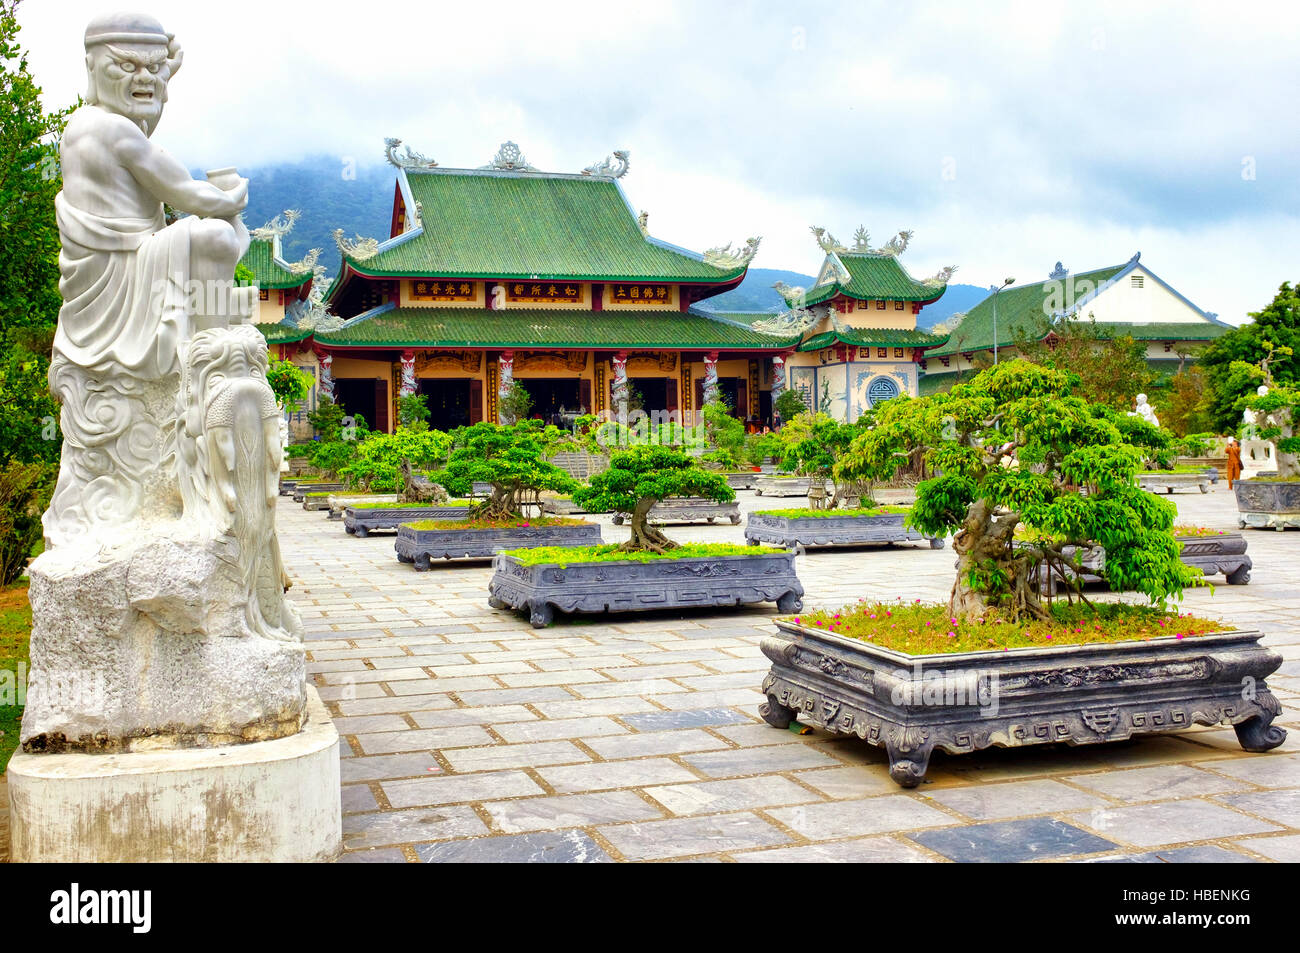 Arhat garden in the Son Tra Linh Ung Pagoda, Da Nang, Vietnam Stock Photo